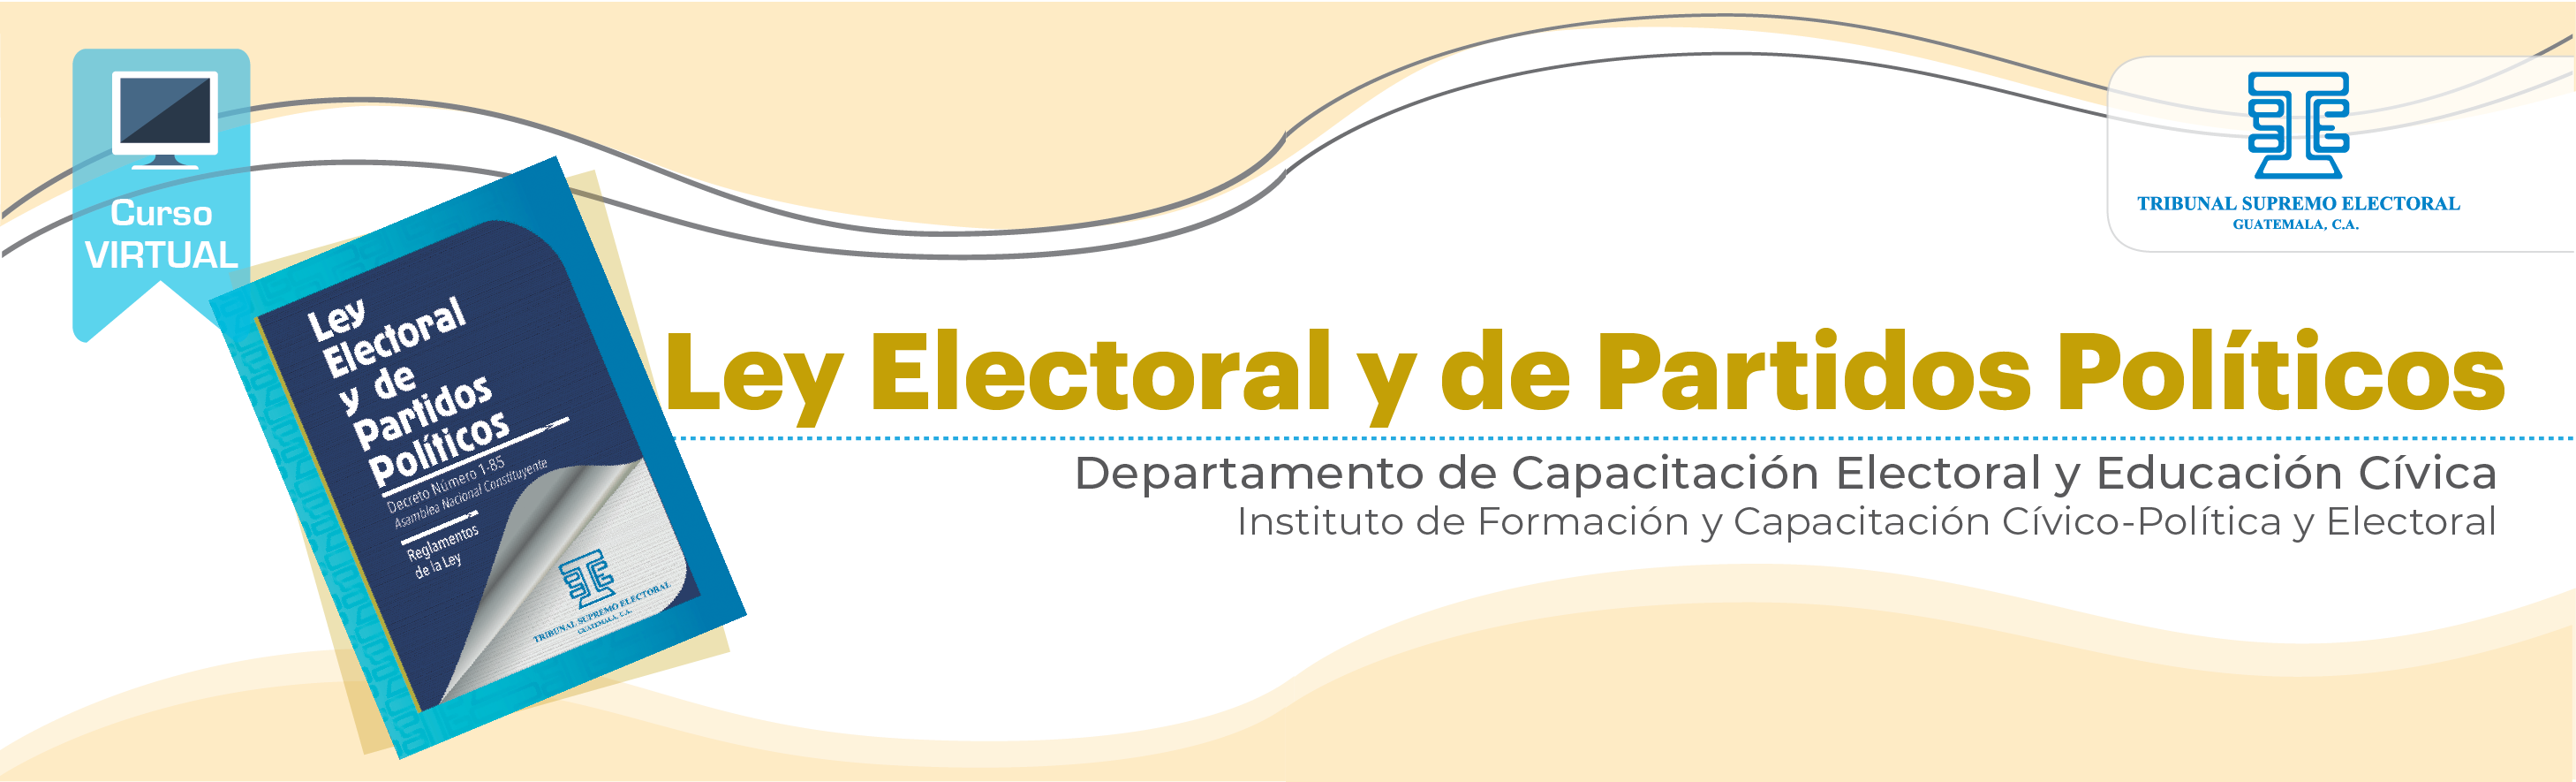 Ley Electoral y de Partidos Políticos 22 R